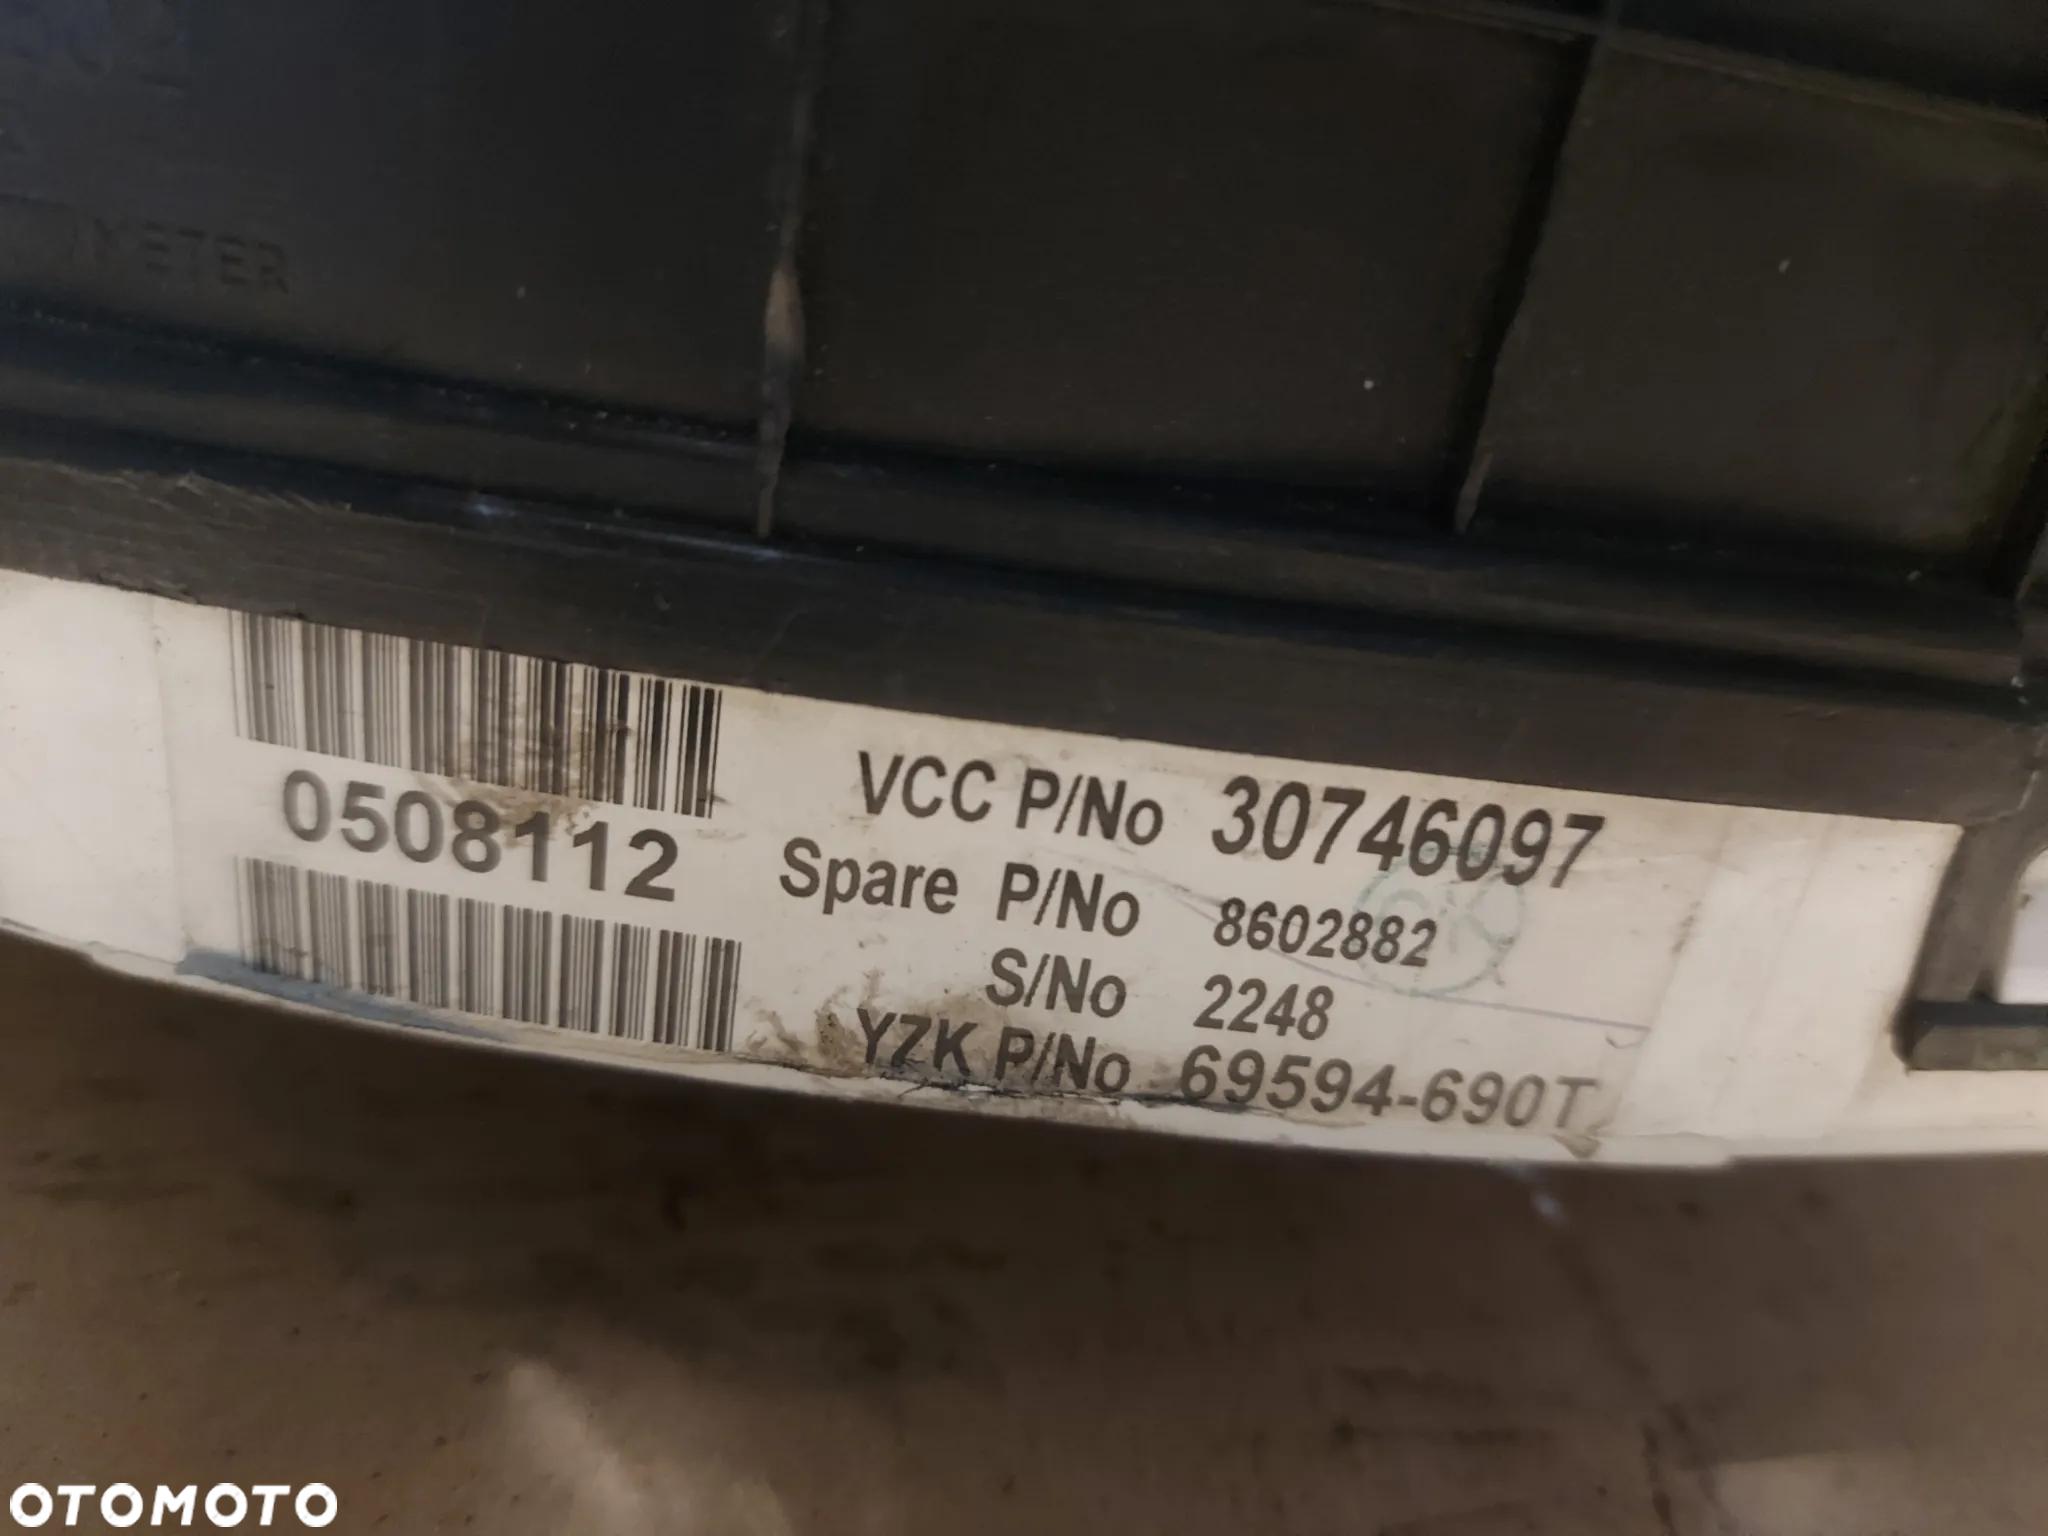 Licznik zegar Volvo S60 '07r 30746097 - 4